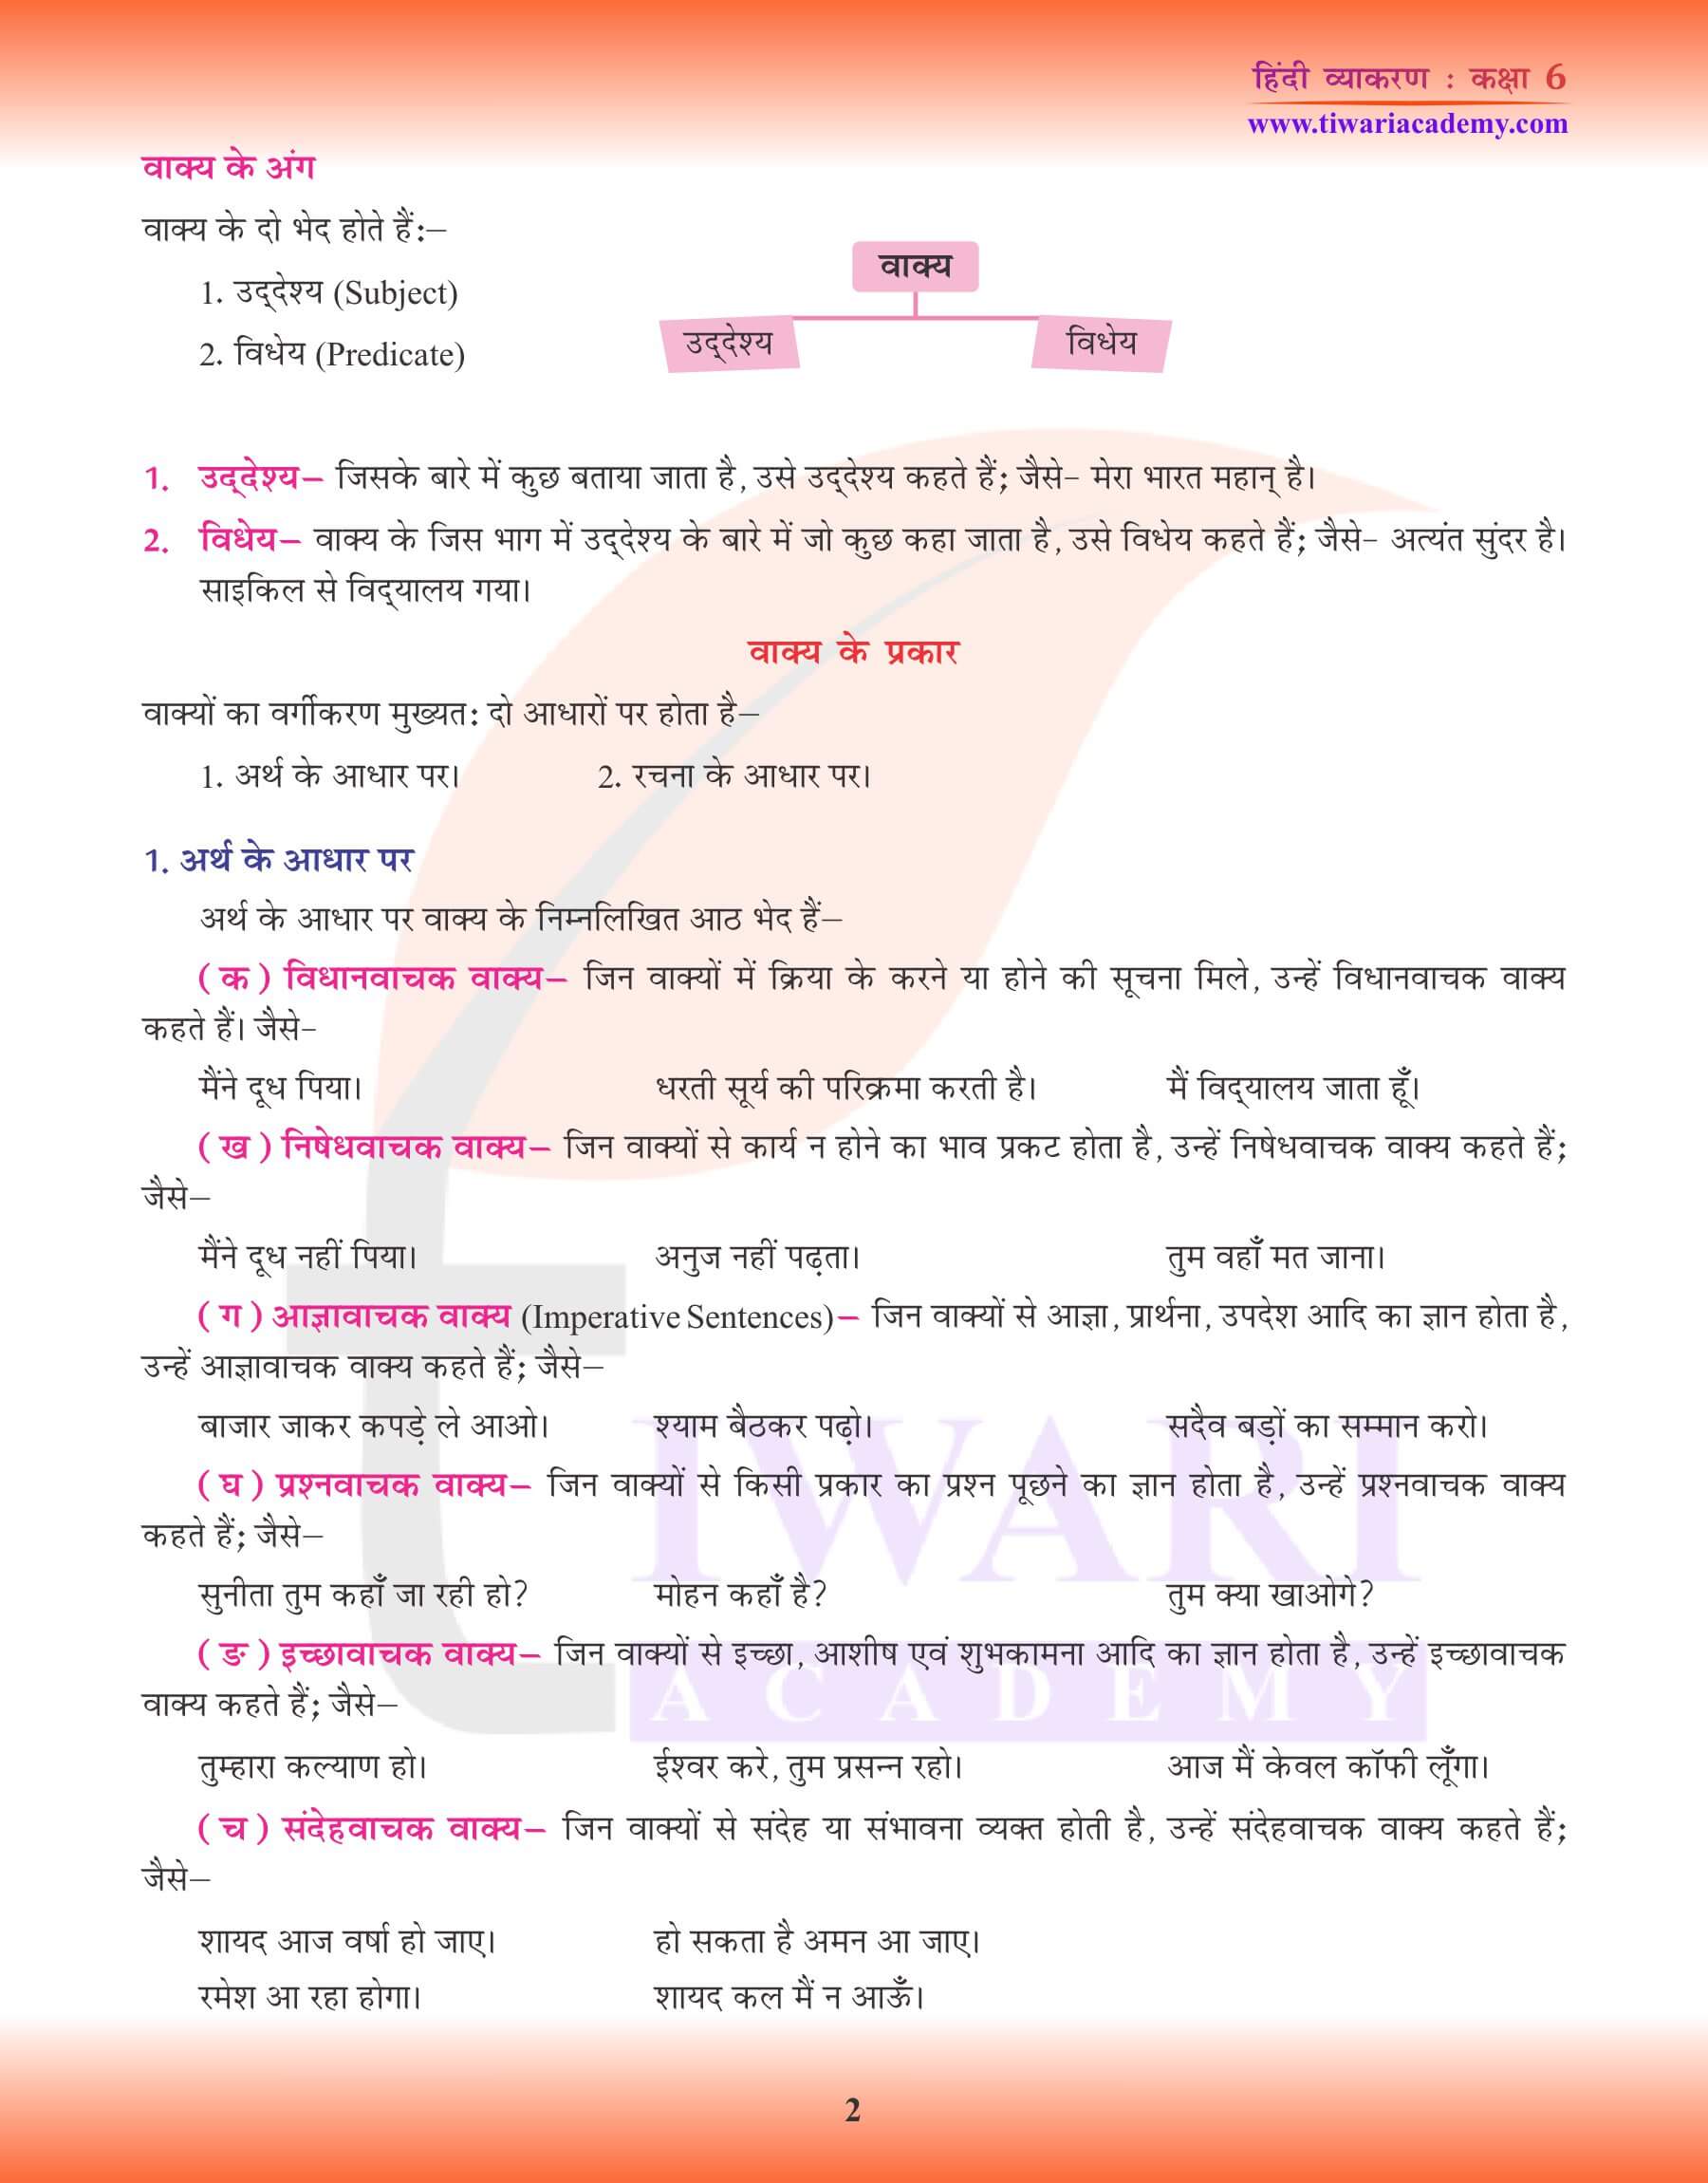 कक्षा 6 हिंदी व्याकरण वाक्य अभ्यास पुस्तिका